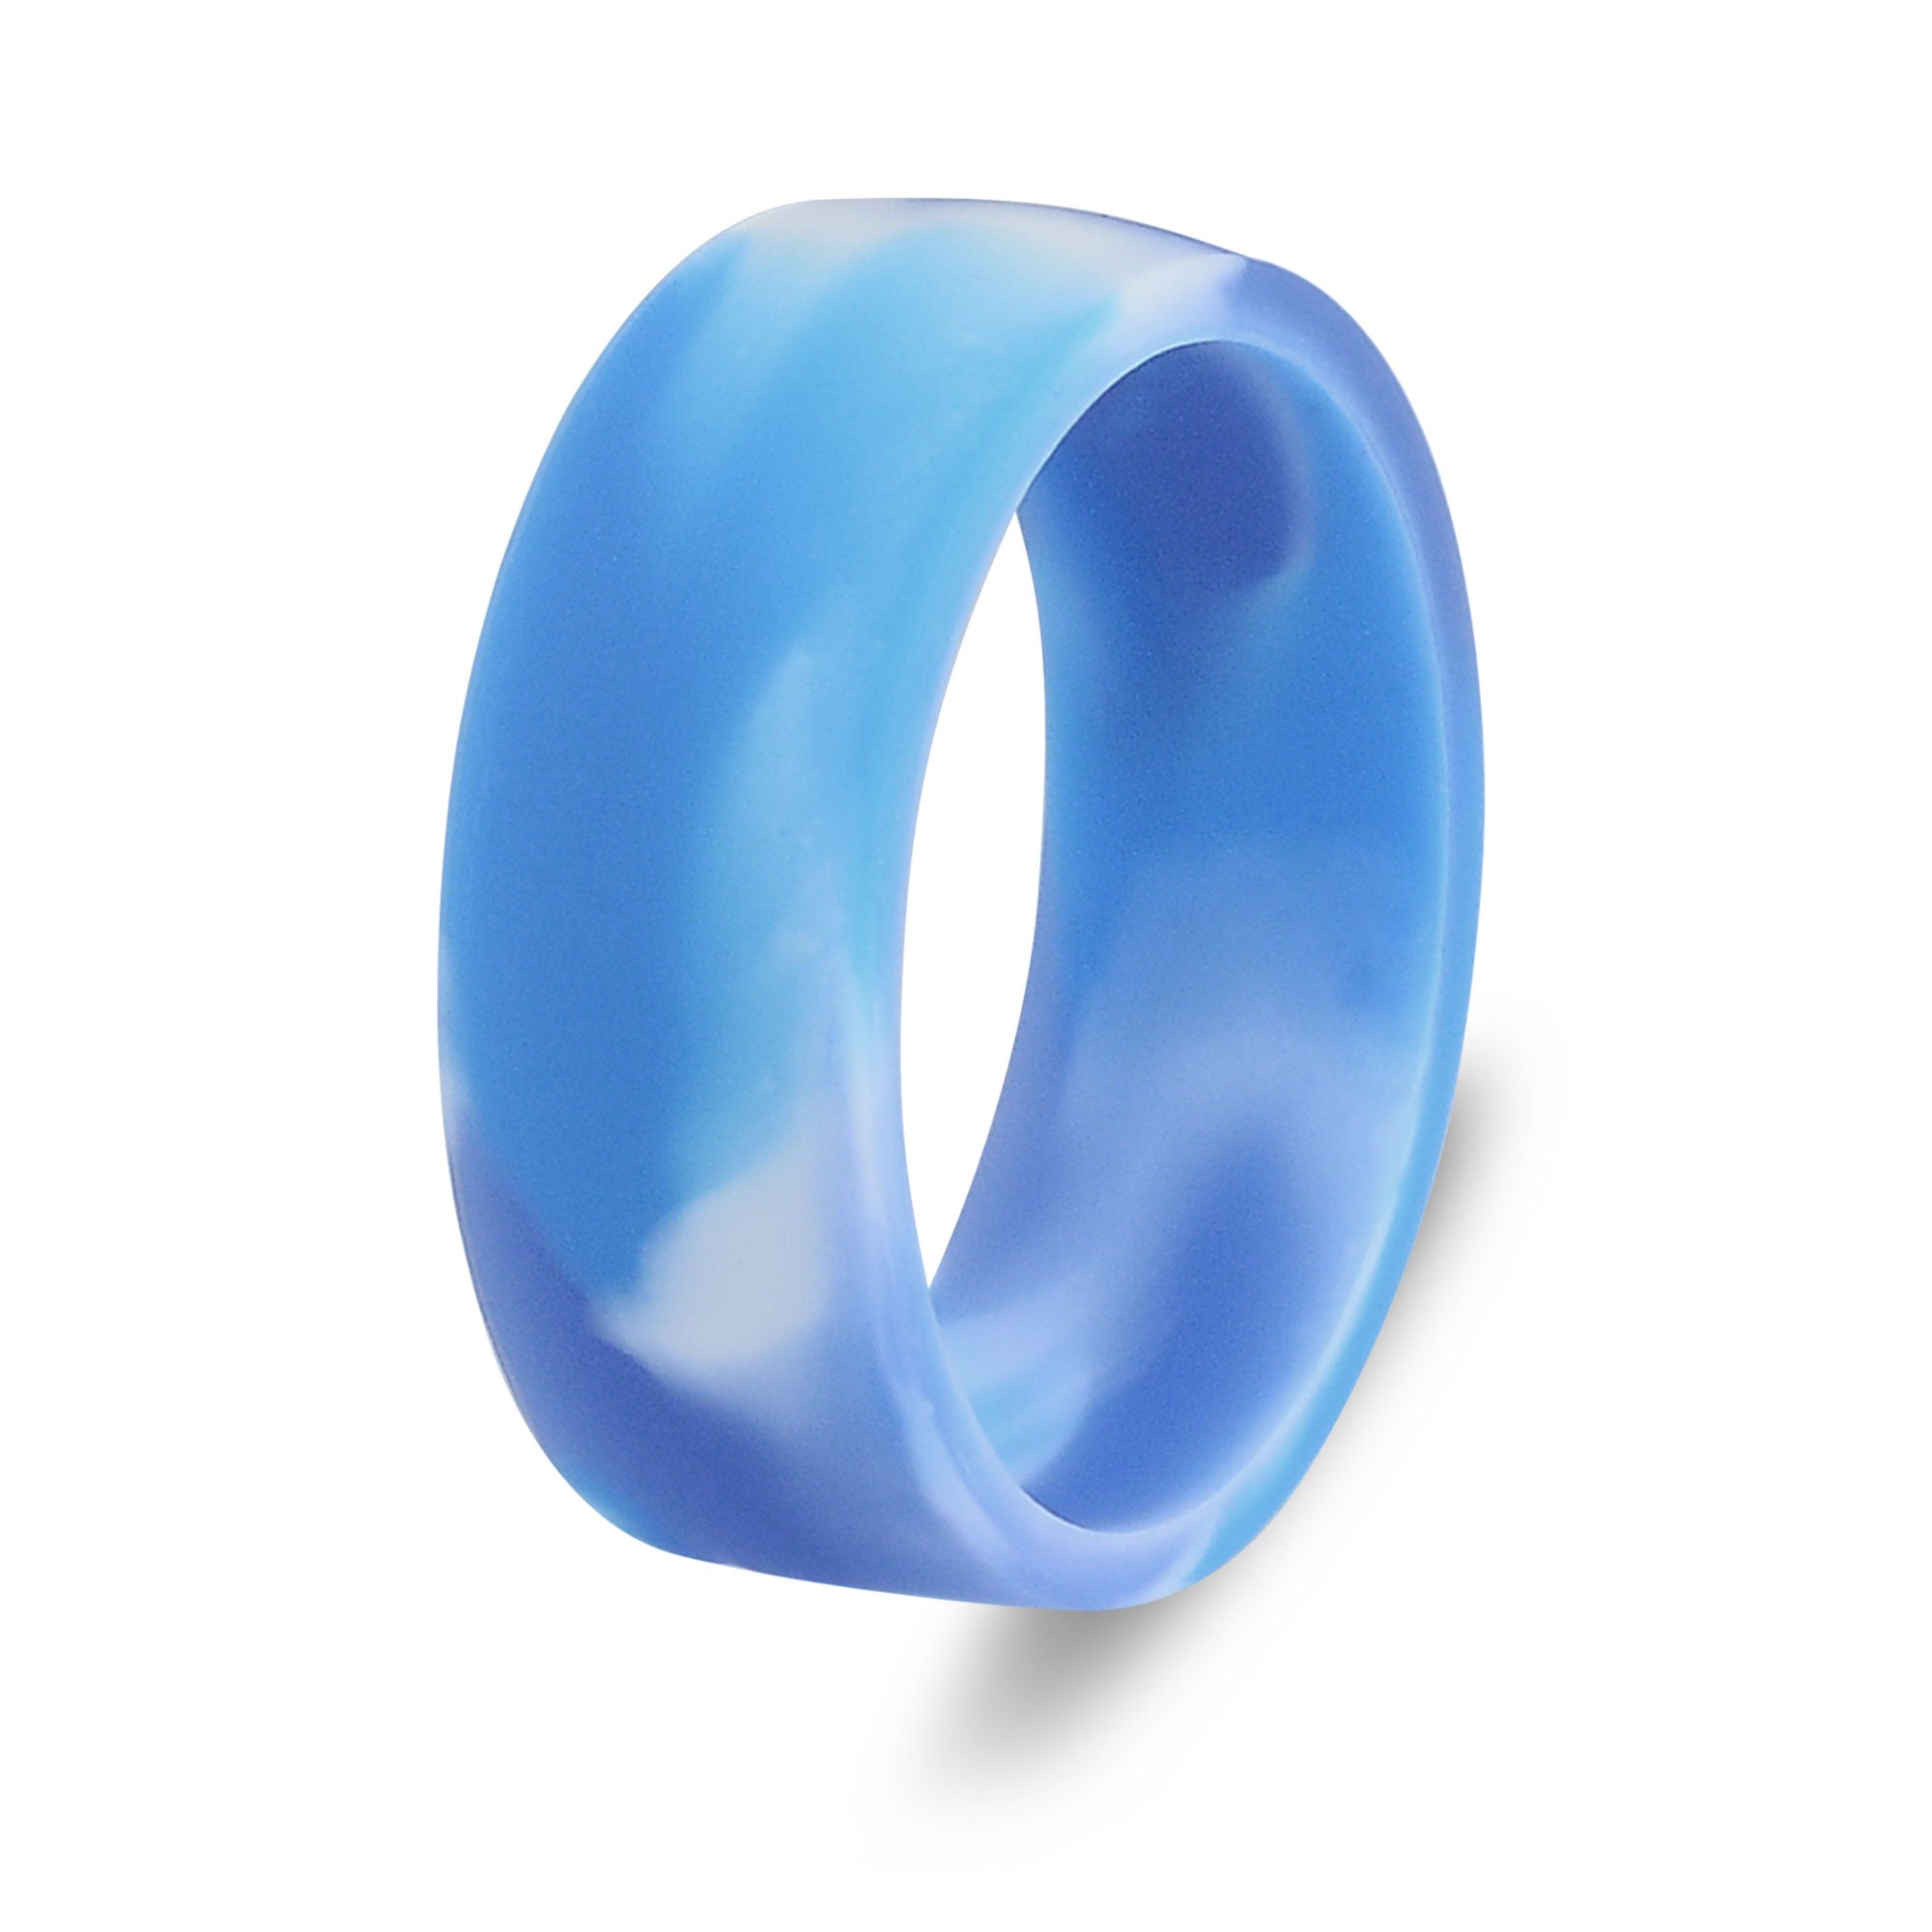 The Aquamarine - Silicone Ring